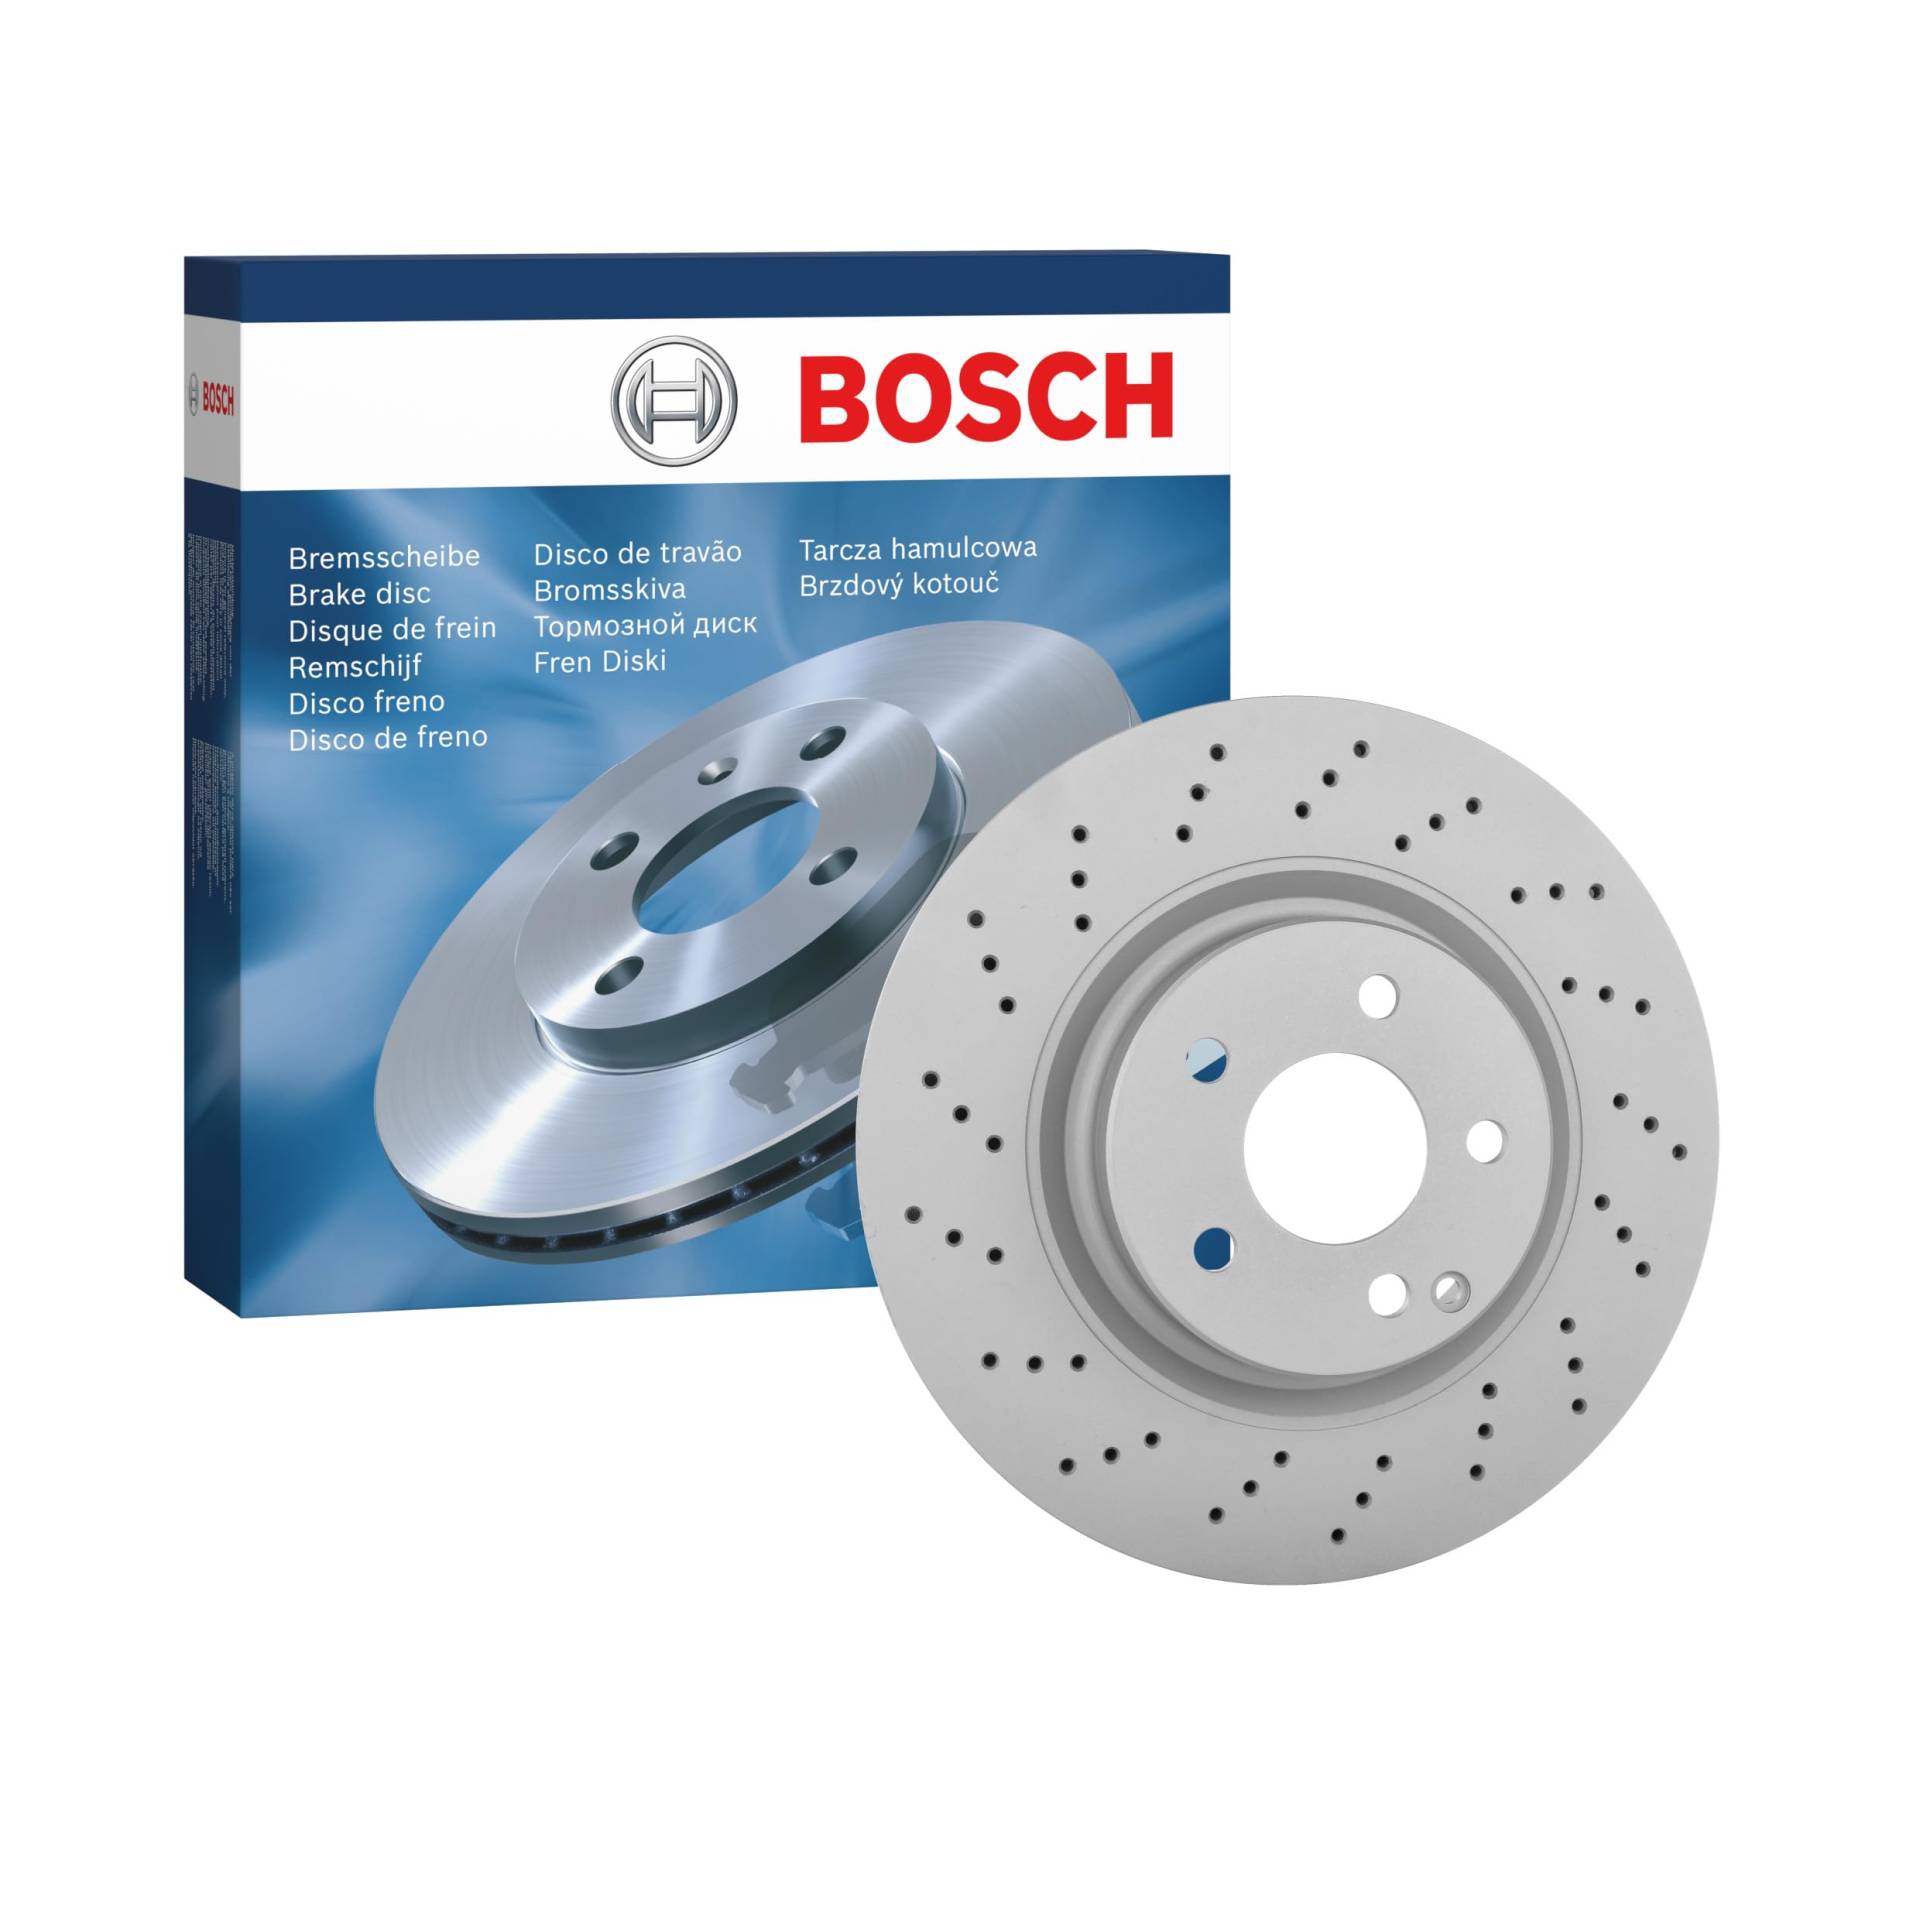 Bosch BD1309 Bremsscheiben - Vorderachse - ECE-R90 Zertifizierung - eine Bremsscheibe von Bosch Automotive